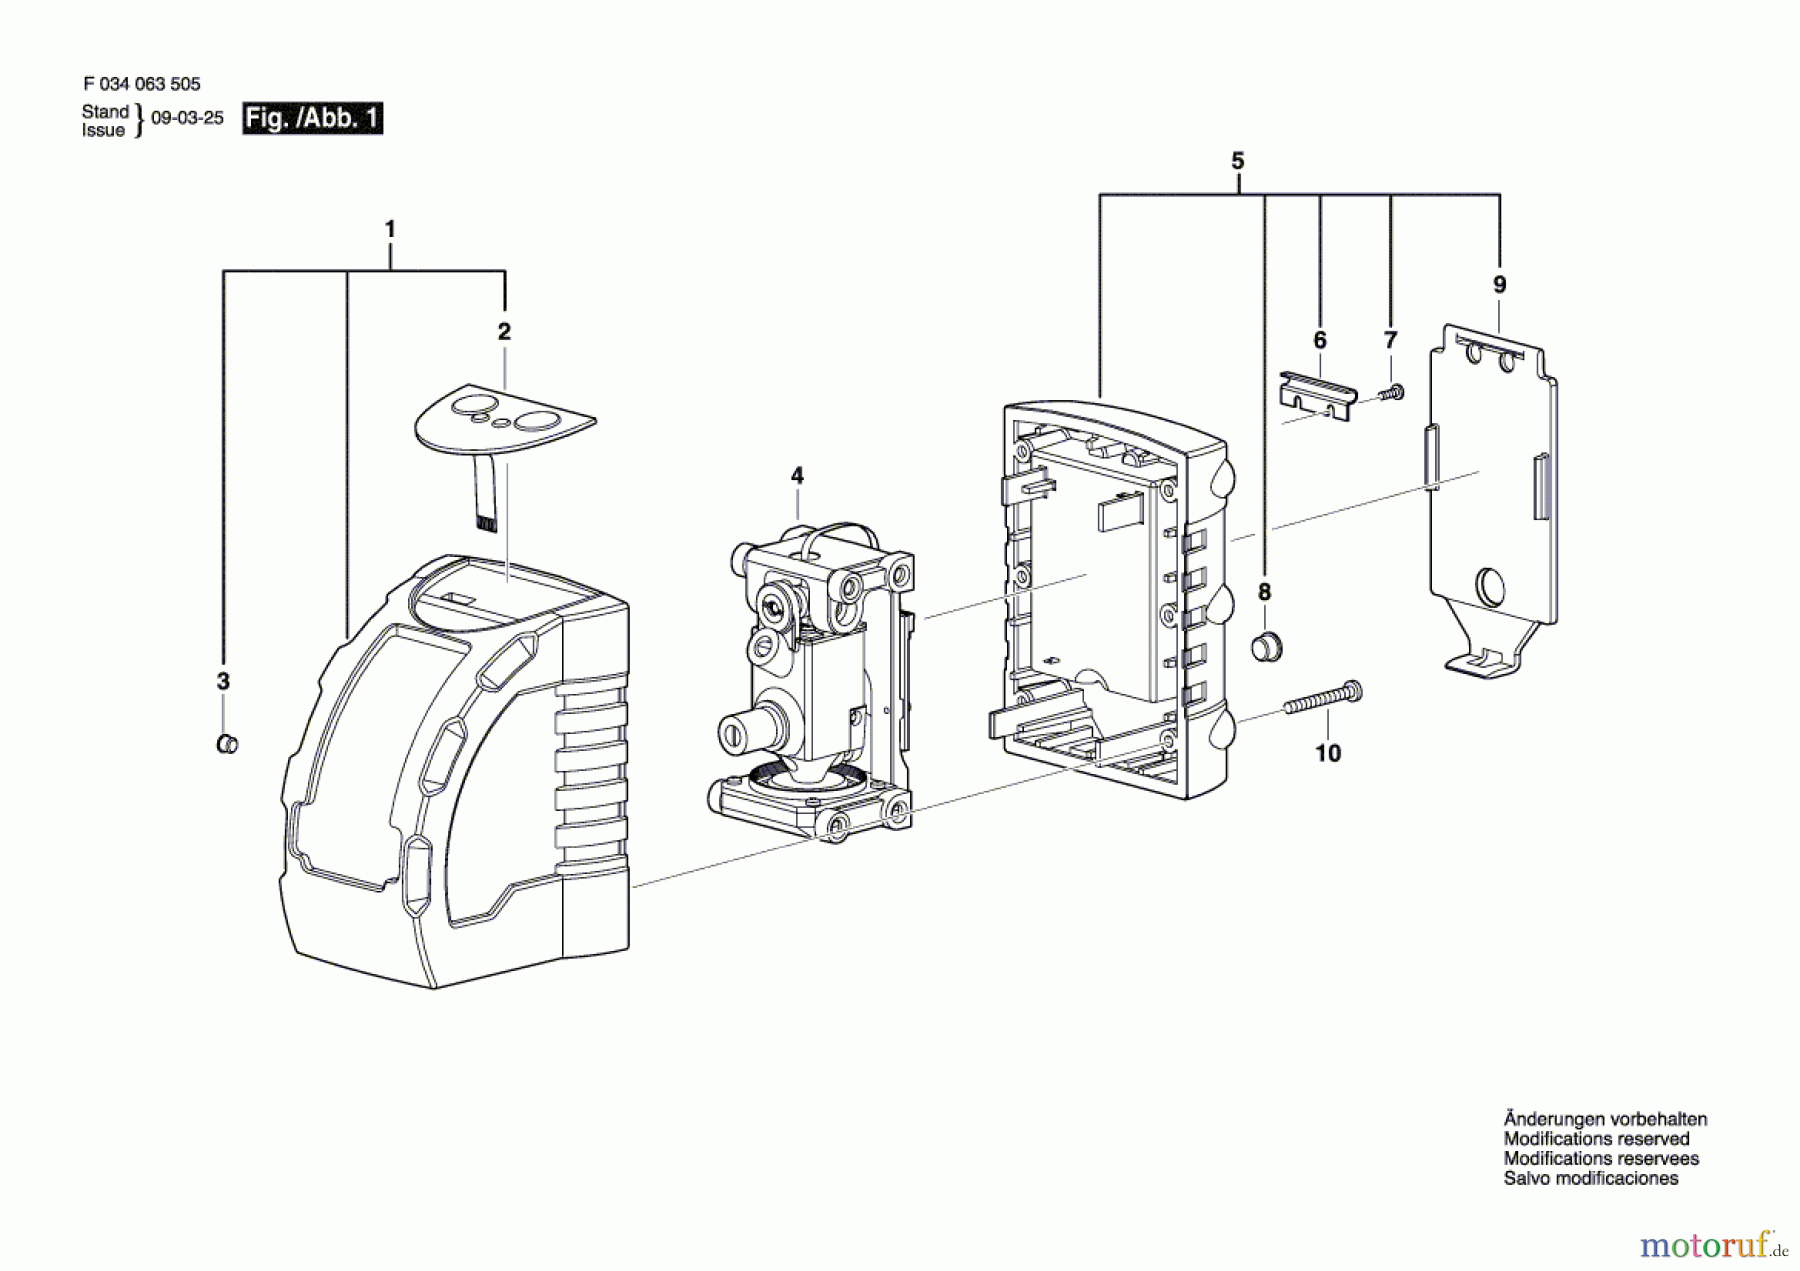  Bosch Werkzeug Montage ILMXT4 Seite 1